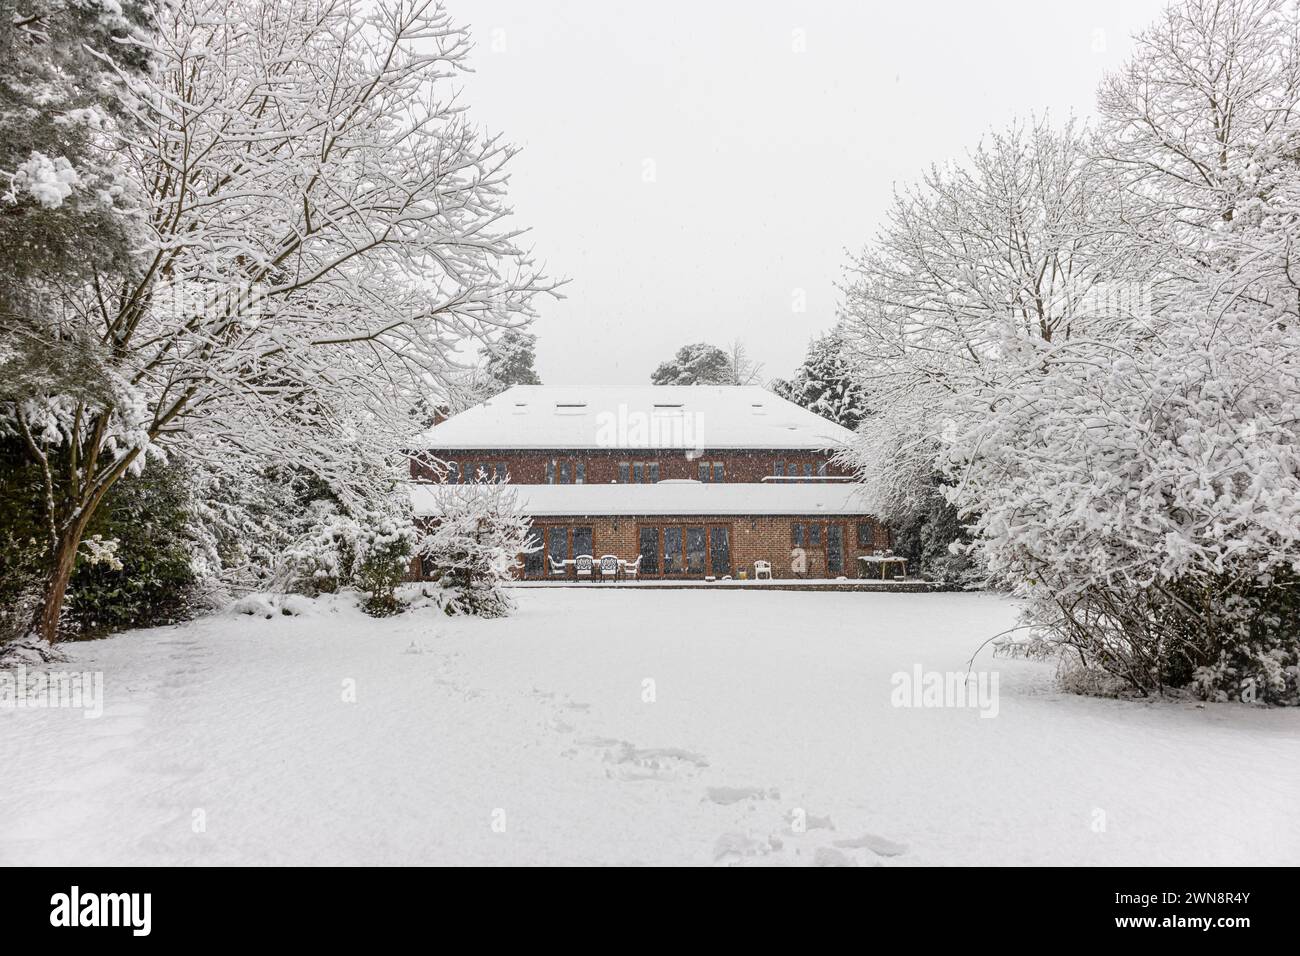 Ein Vorstadtgarten und baumlose Bäume, die während eines starken Schneefalls im Winter mit Schnee bedeckt sind, Woking, Surrey, Südosten Englands, Großbritannien Stockfoto